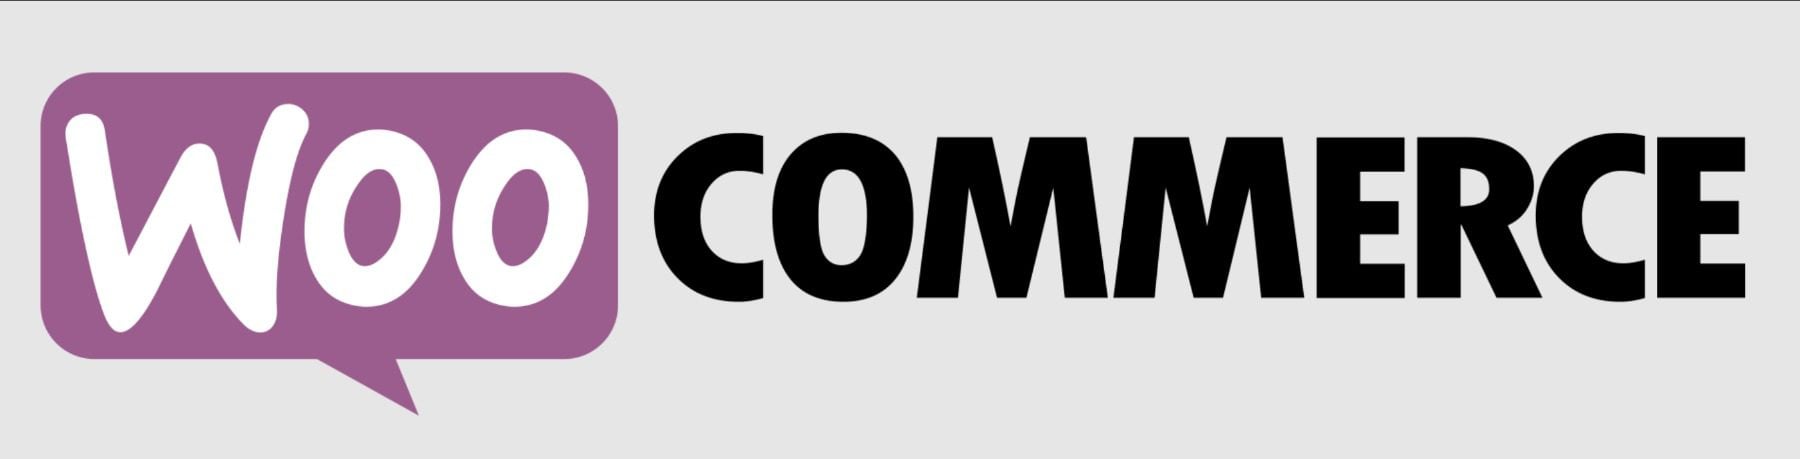 WooCommerce Logo Mark